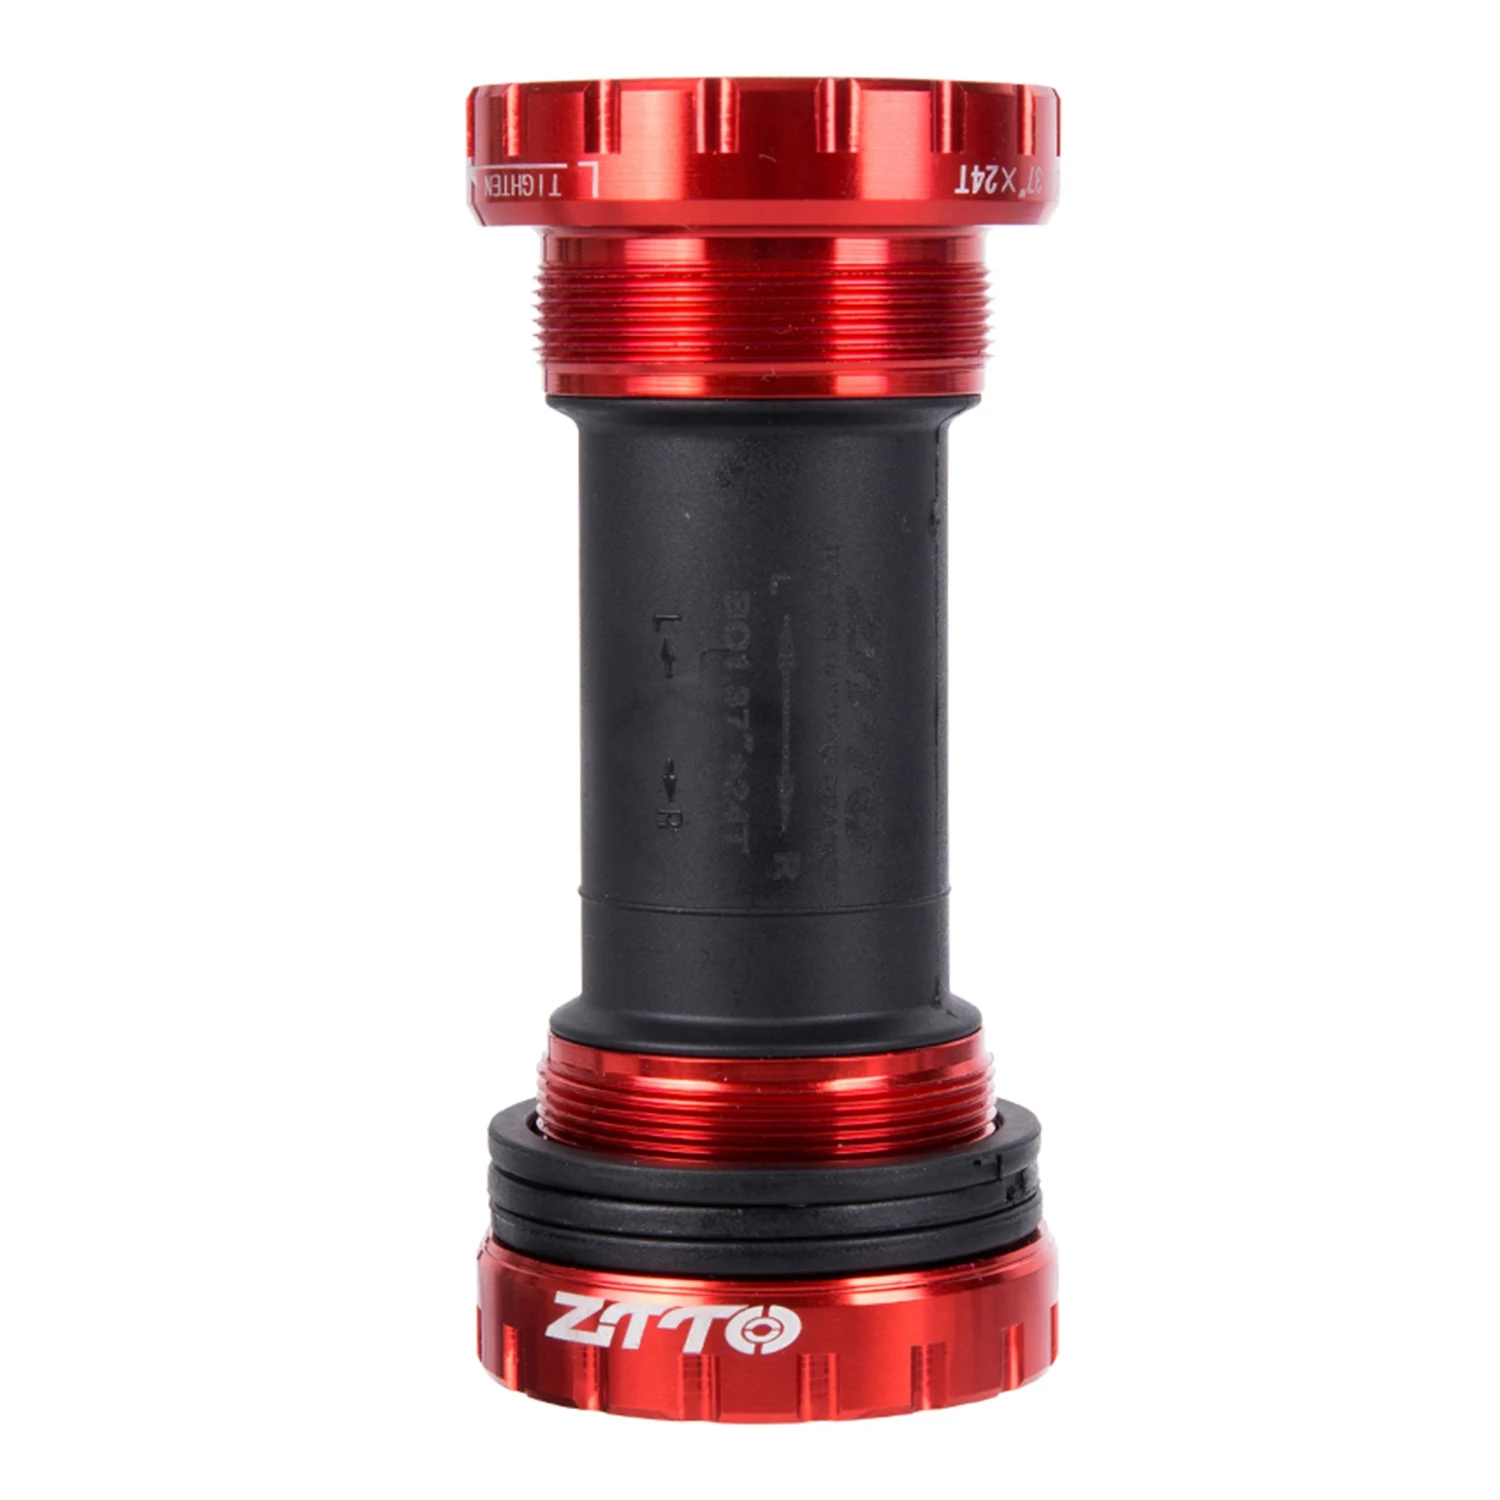 Горячий-Ztto подшипник Нижний кронштейн винт тип 68/73 мм велосипедная ось Mtb дорожный велосипед Нижний Кронштейн водонепроницаемый алюминиевый сплав+ Nylo - Цвет: Red